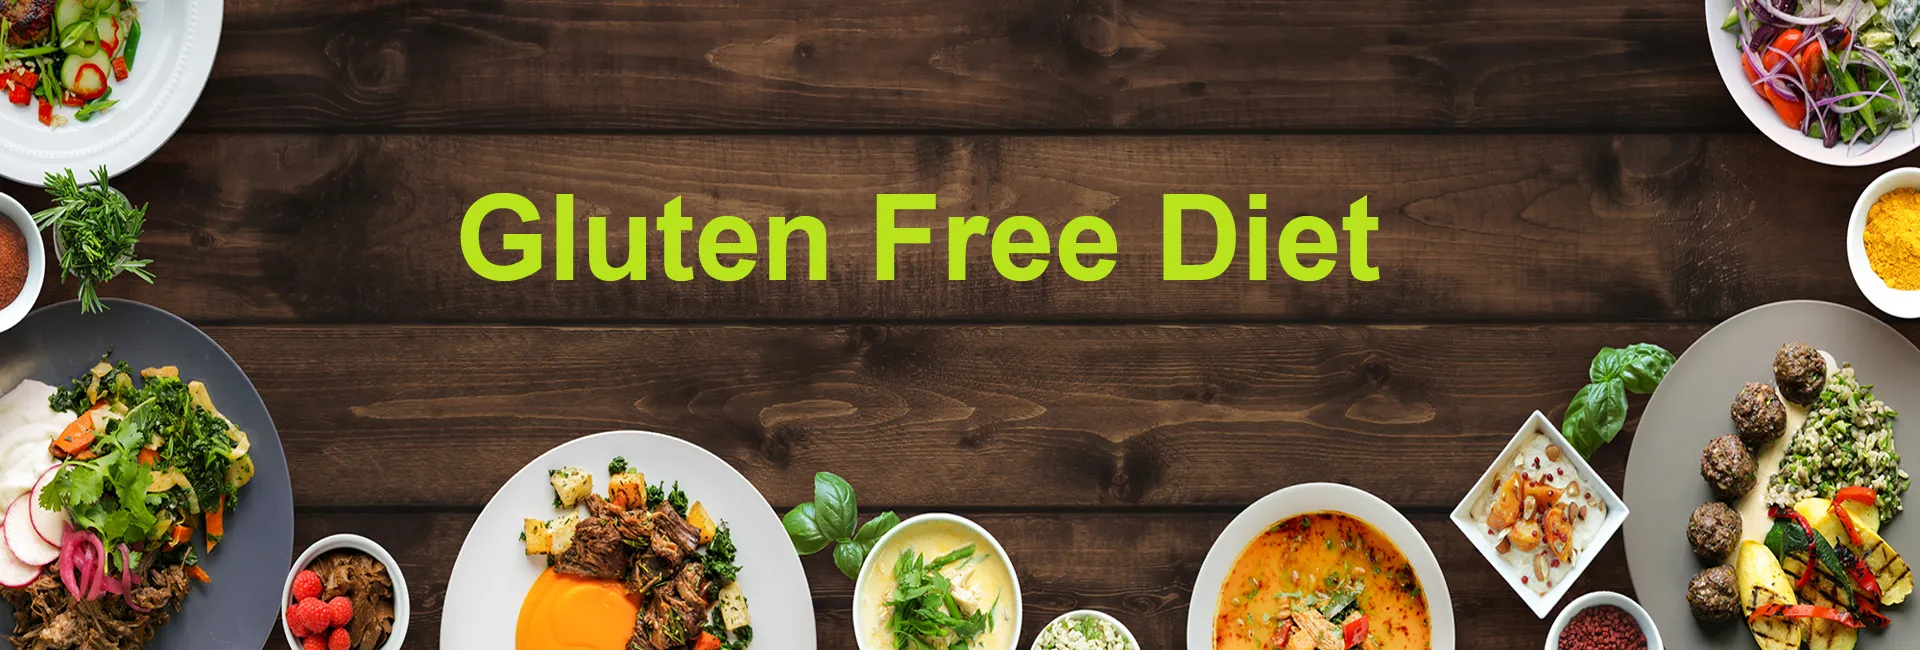 Gluten Free Diet In Mono